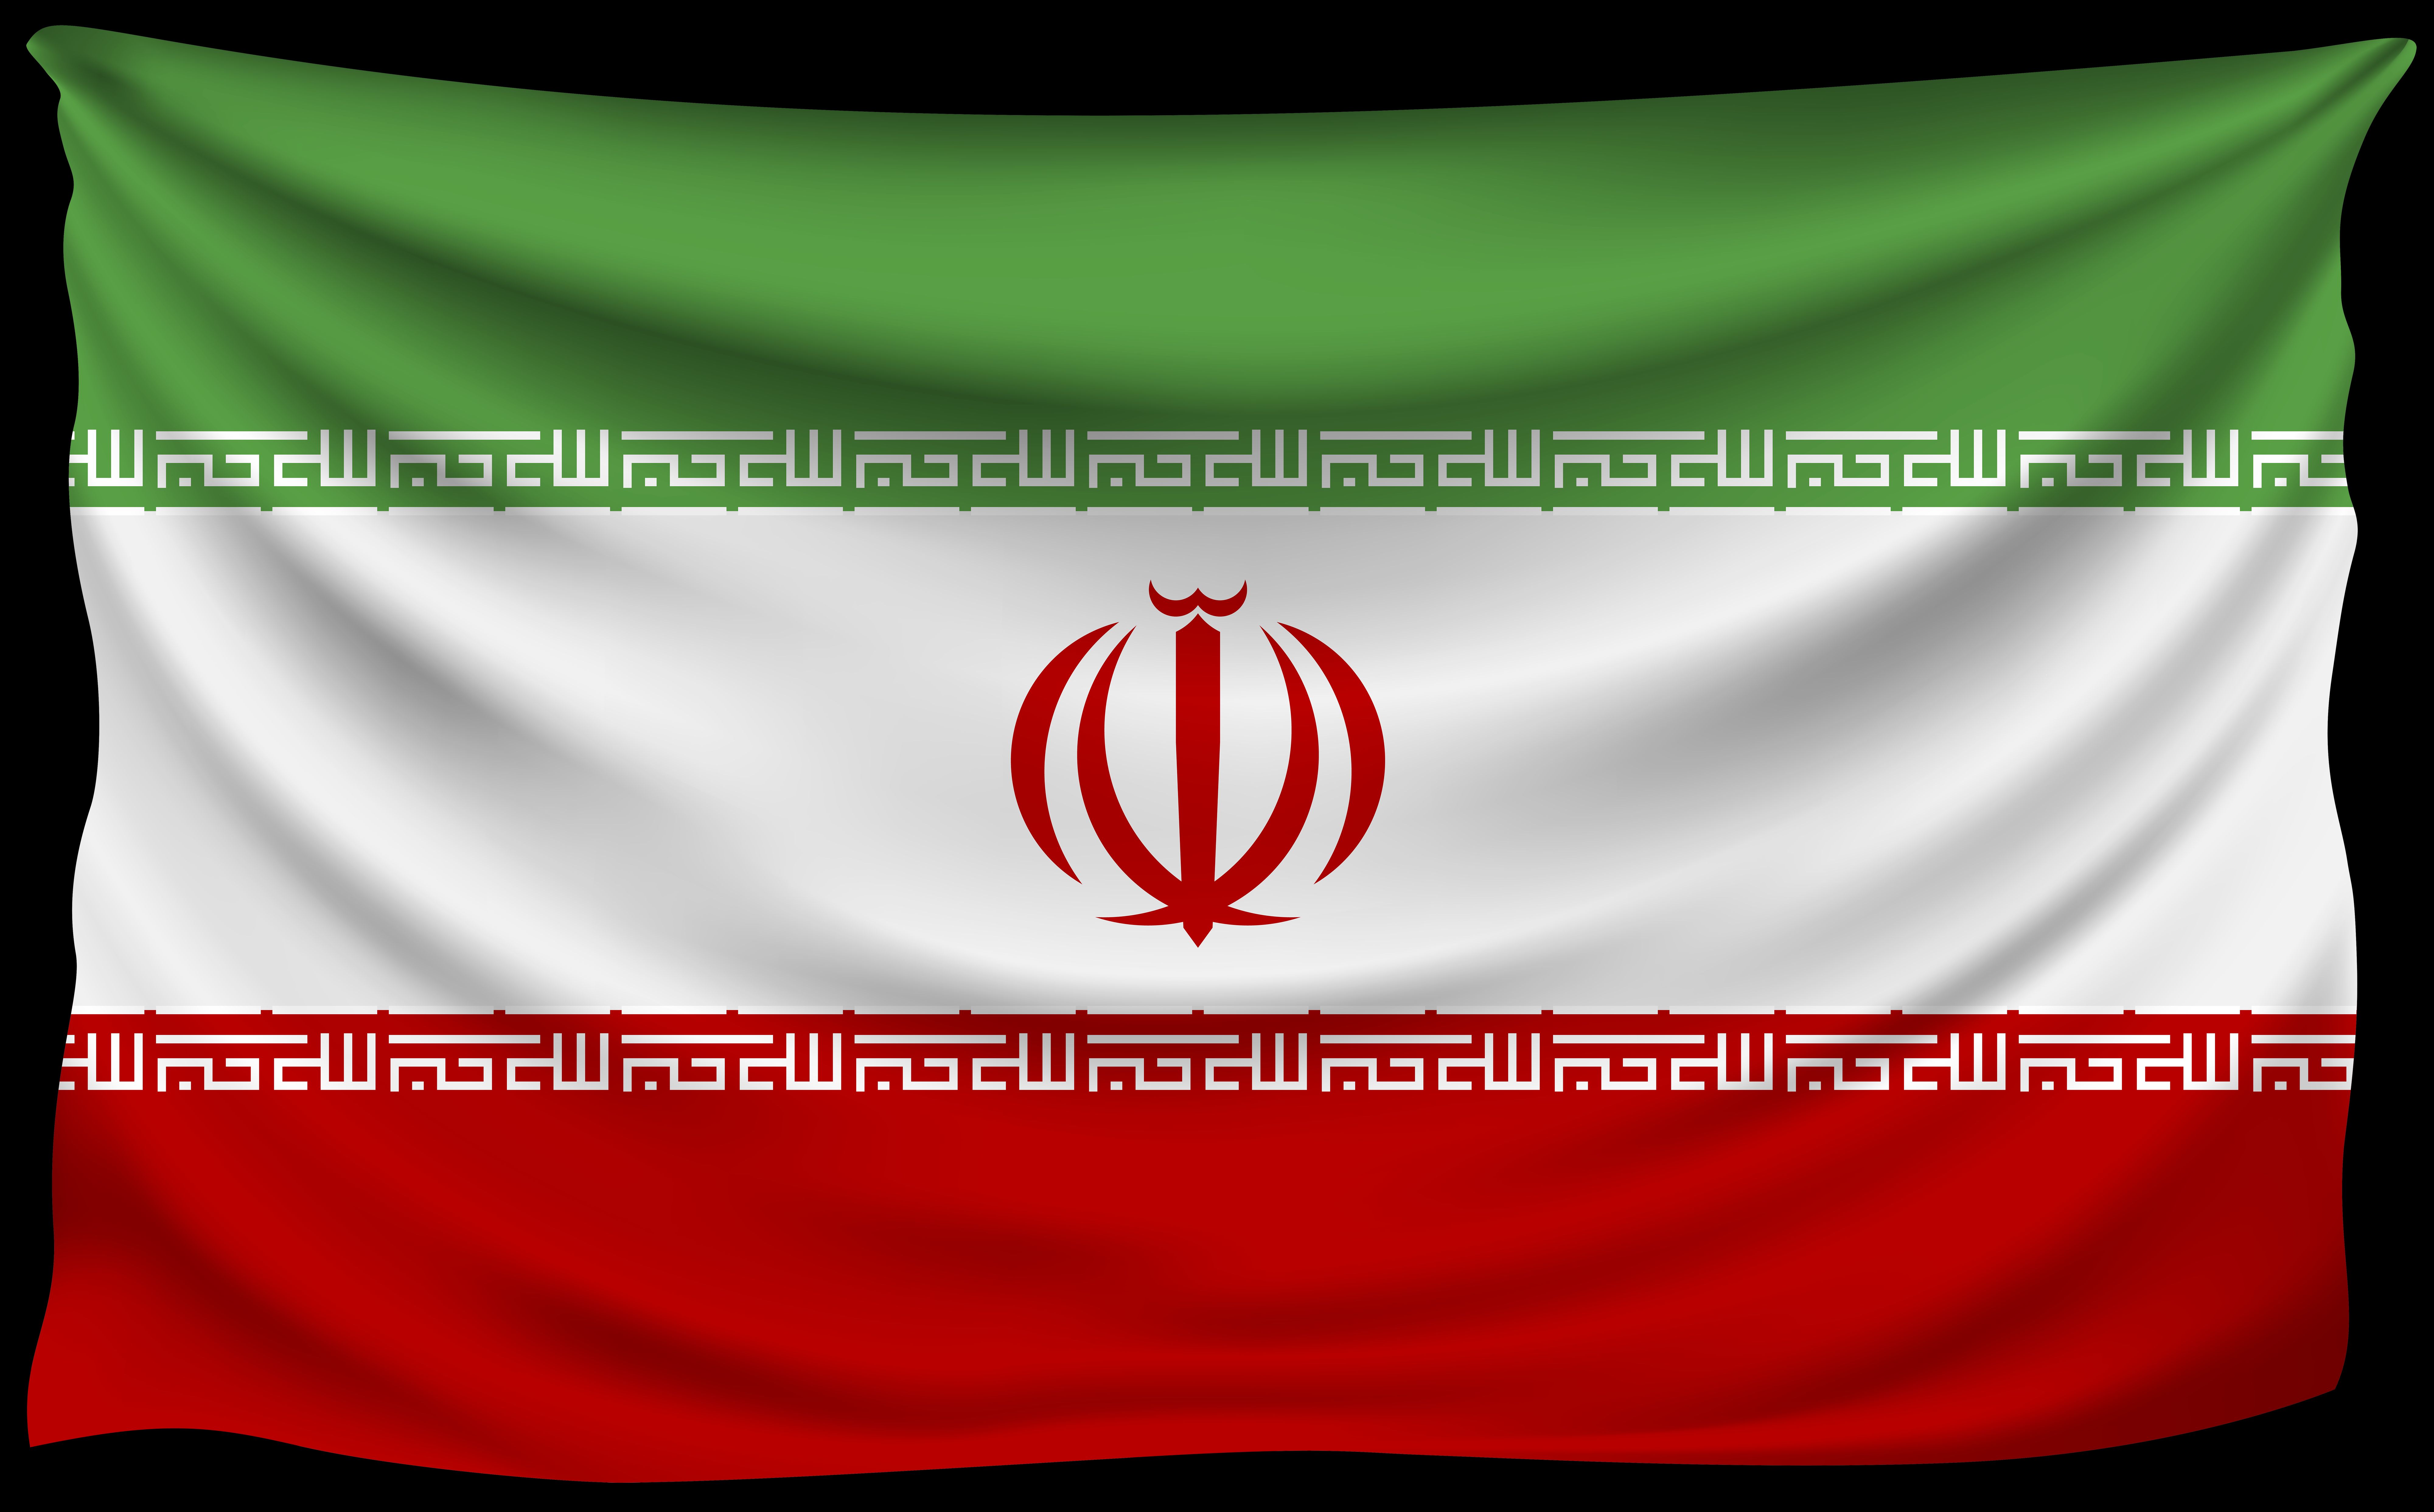 Скачать обои Иранский Флаг на телефон бесплатно